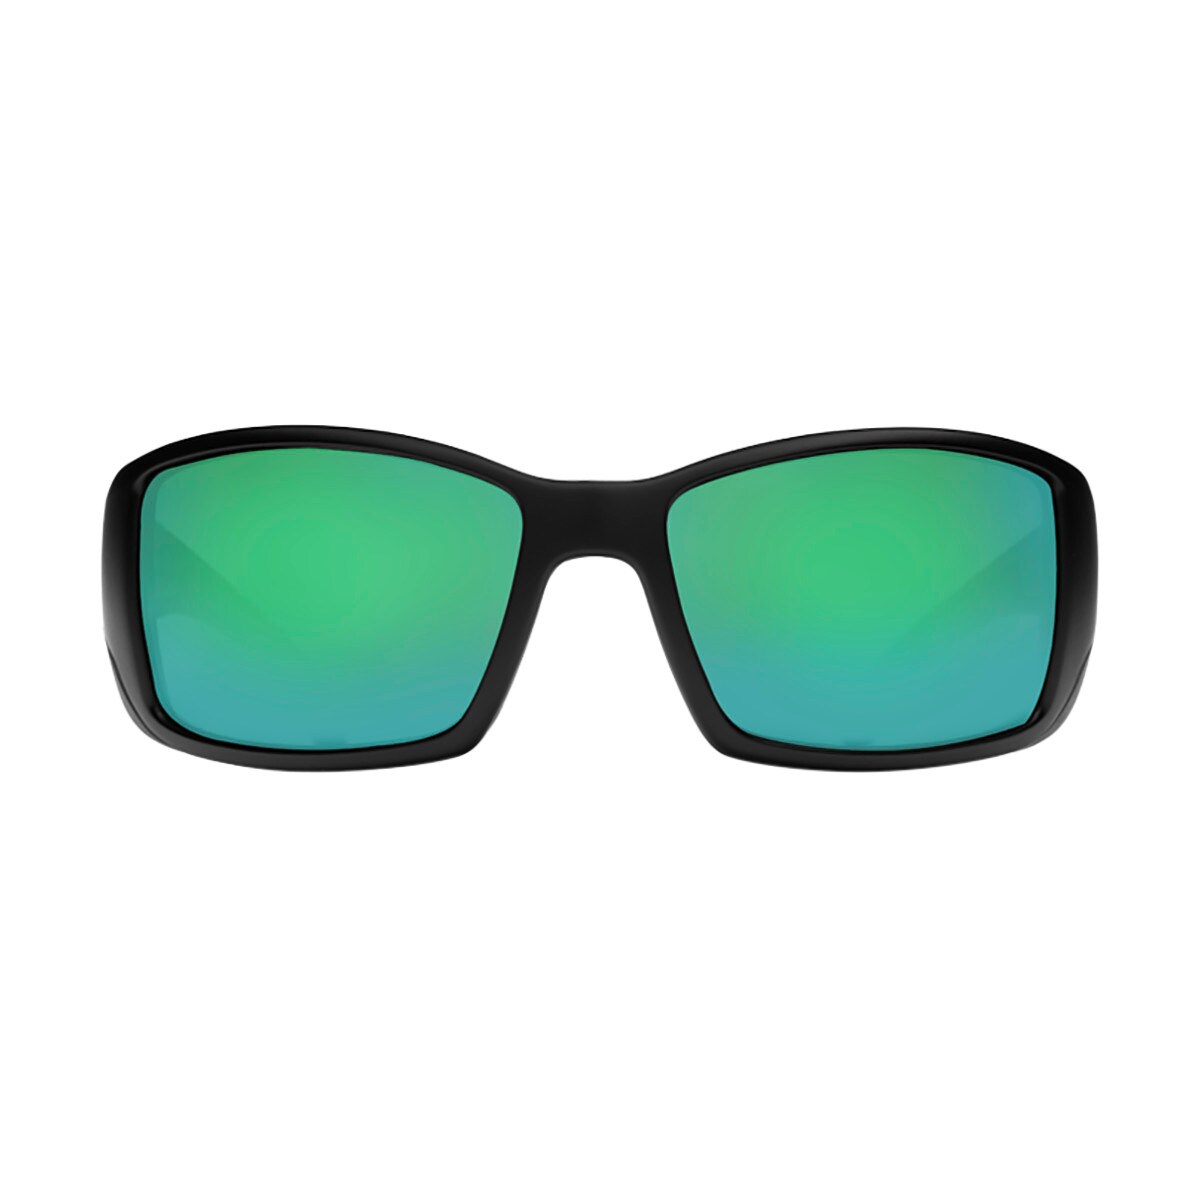 Costa Blackfin 580P Polarized Sunglasses - Men's - Accessories